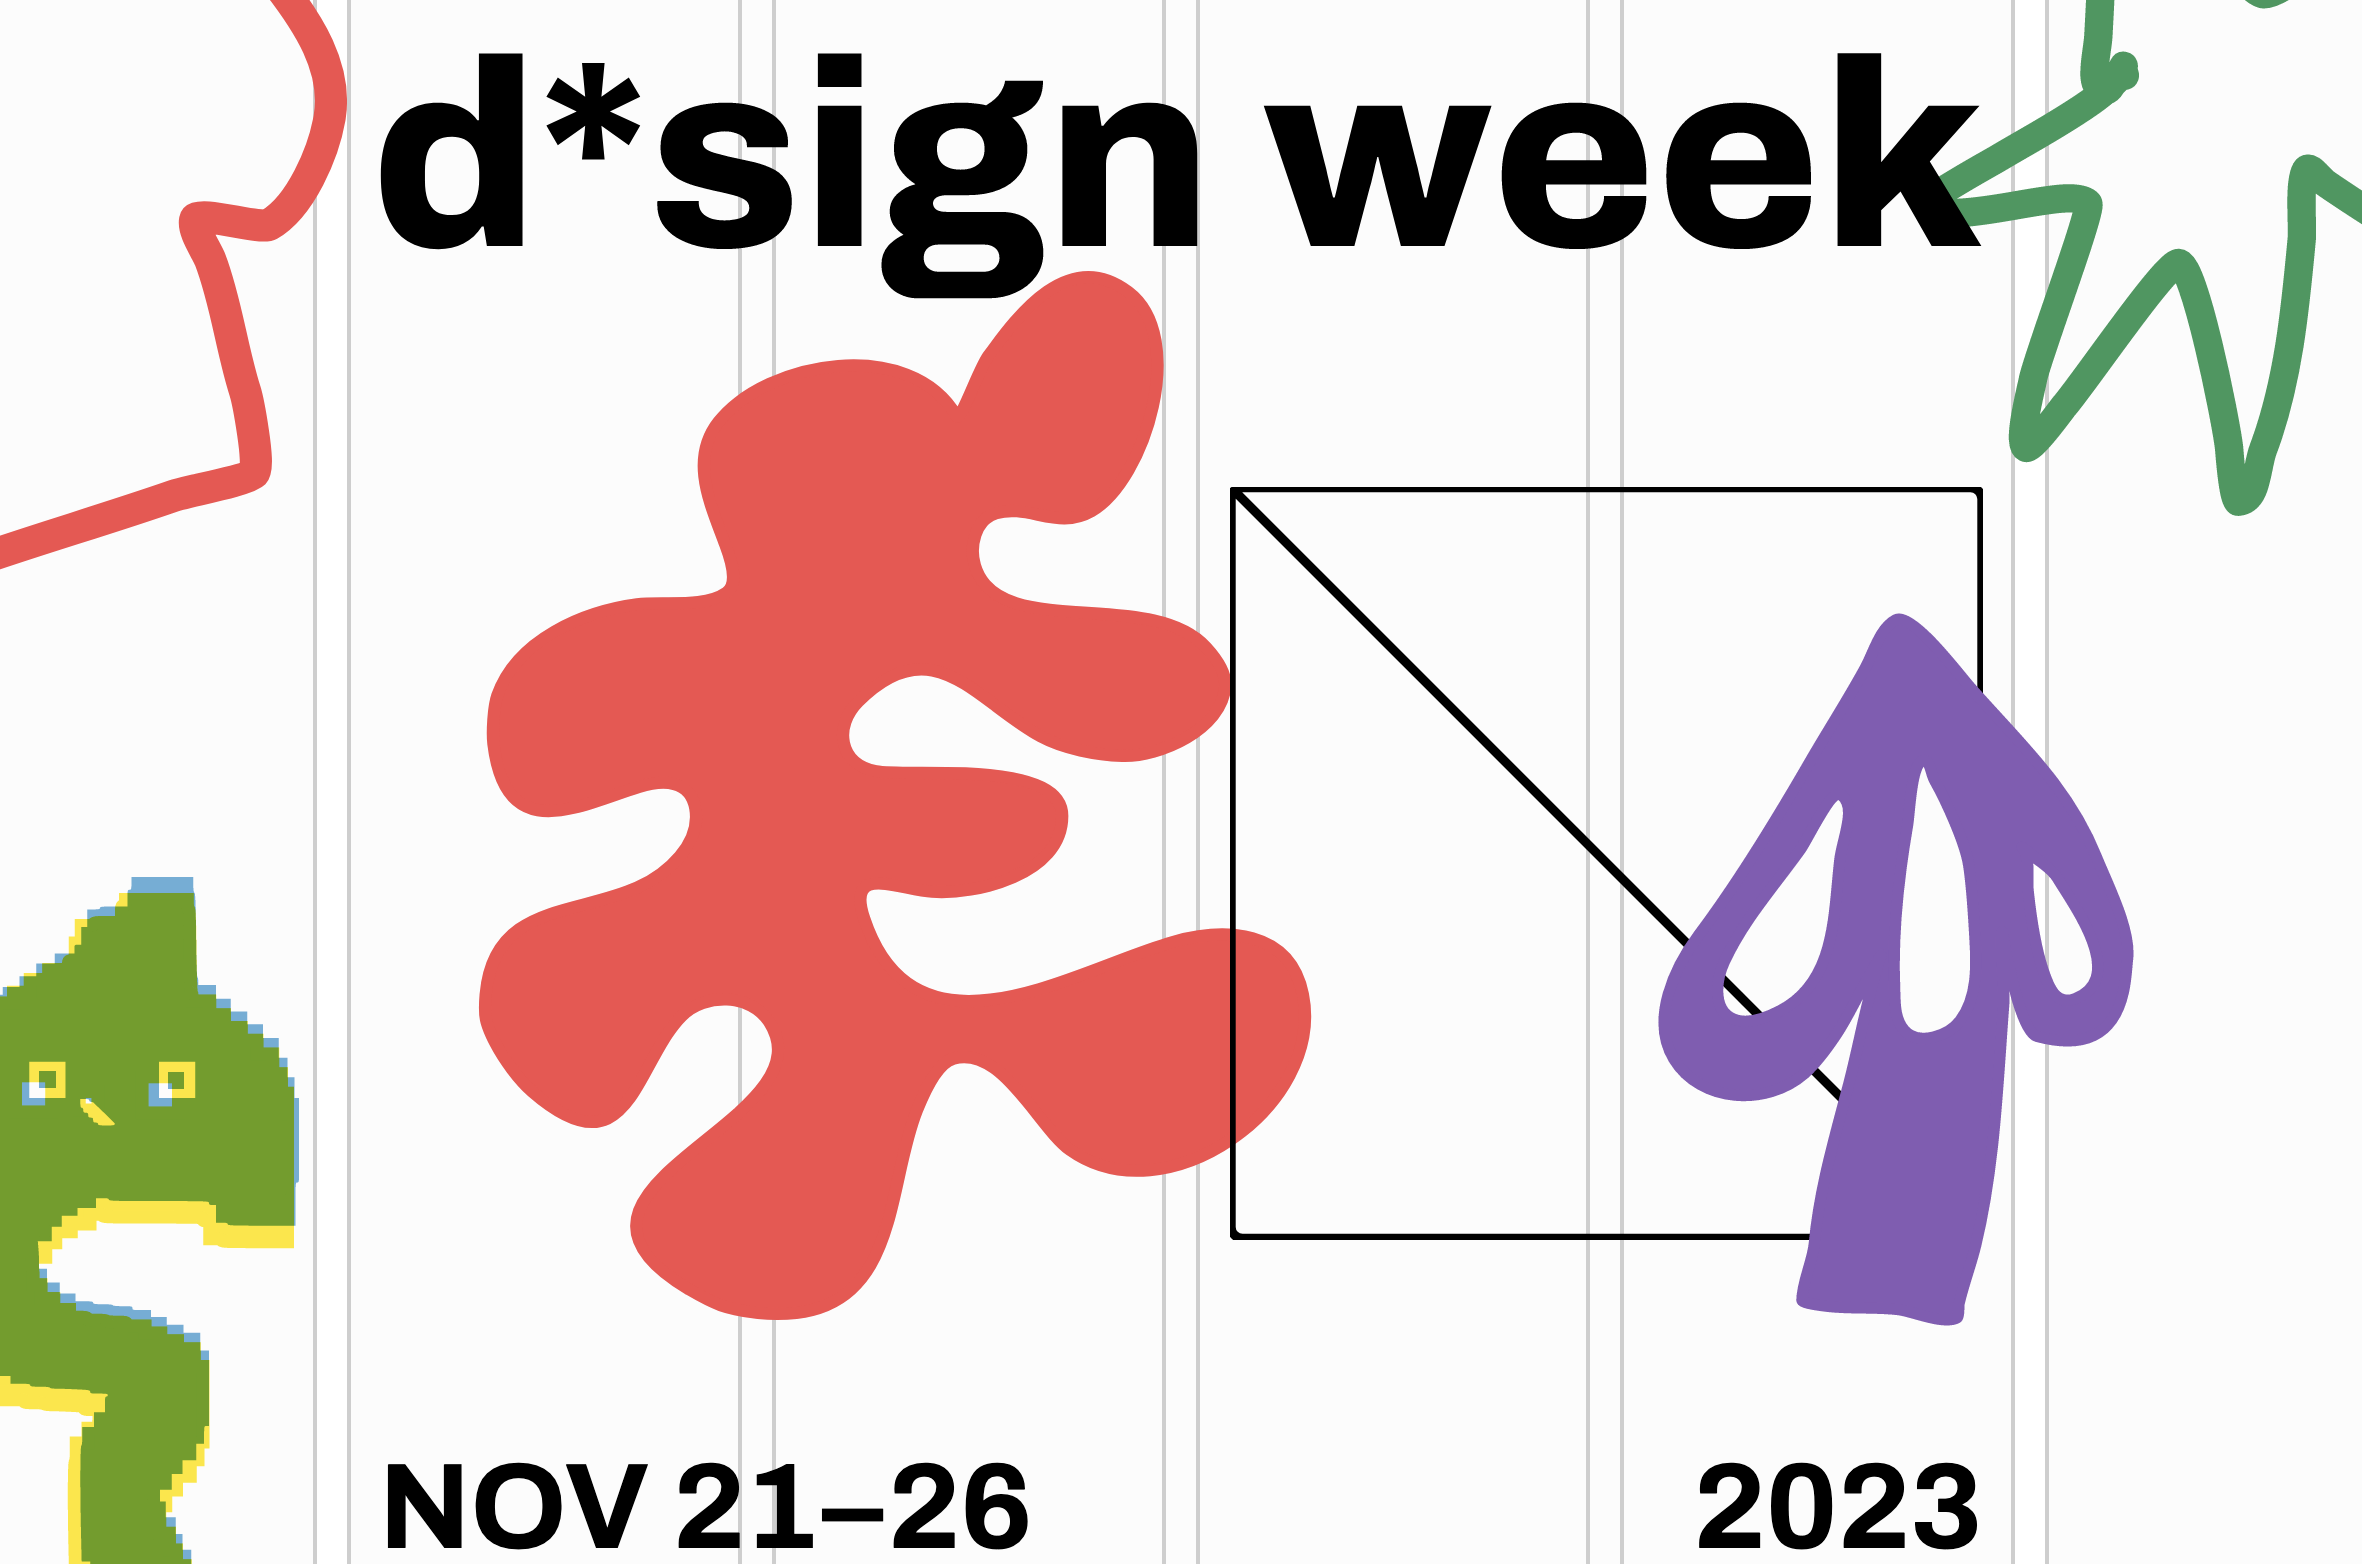 d*sign week